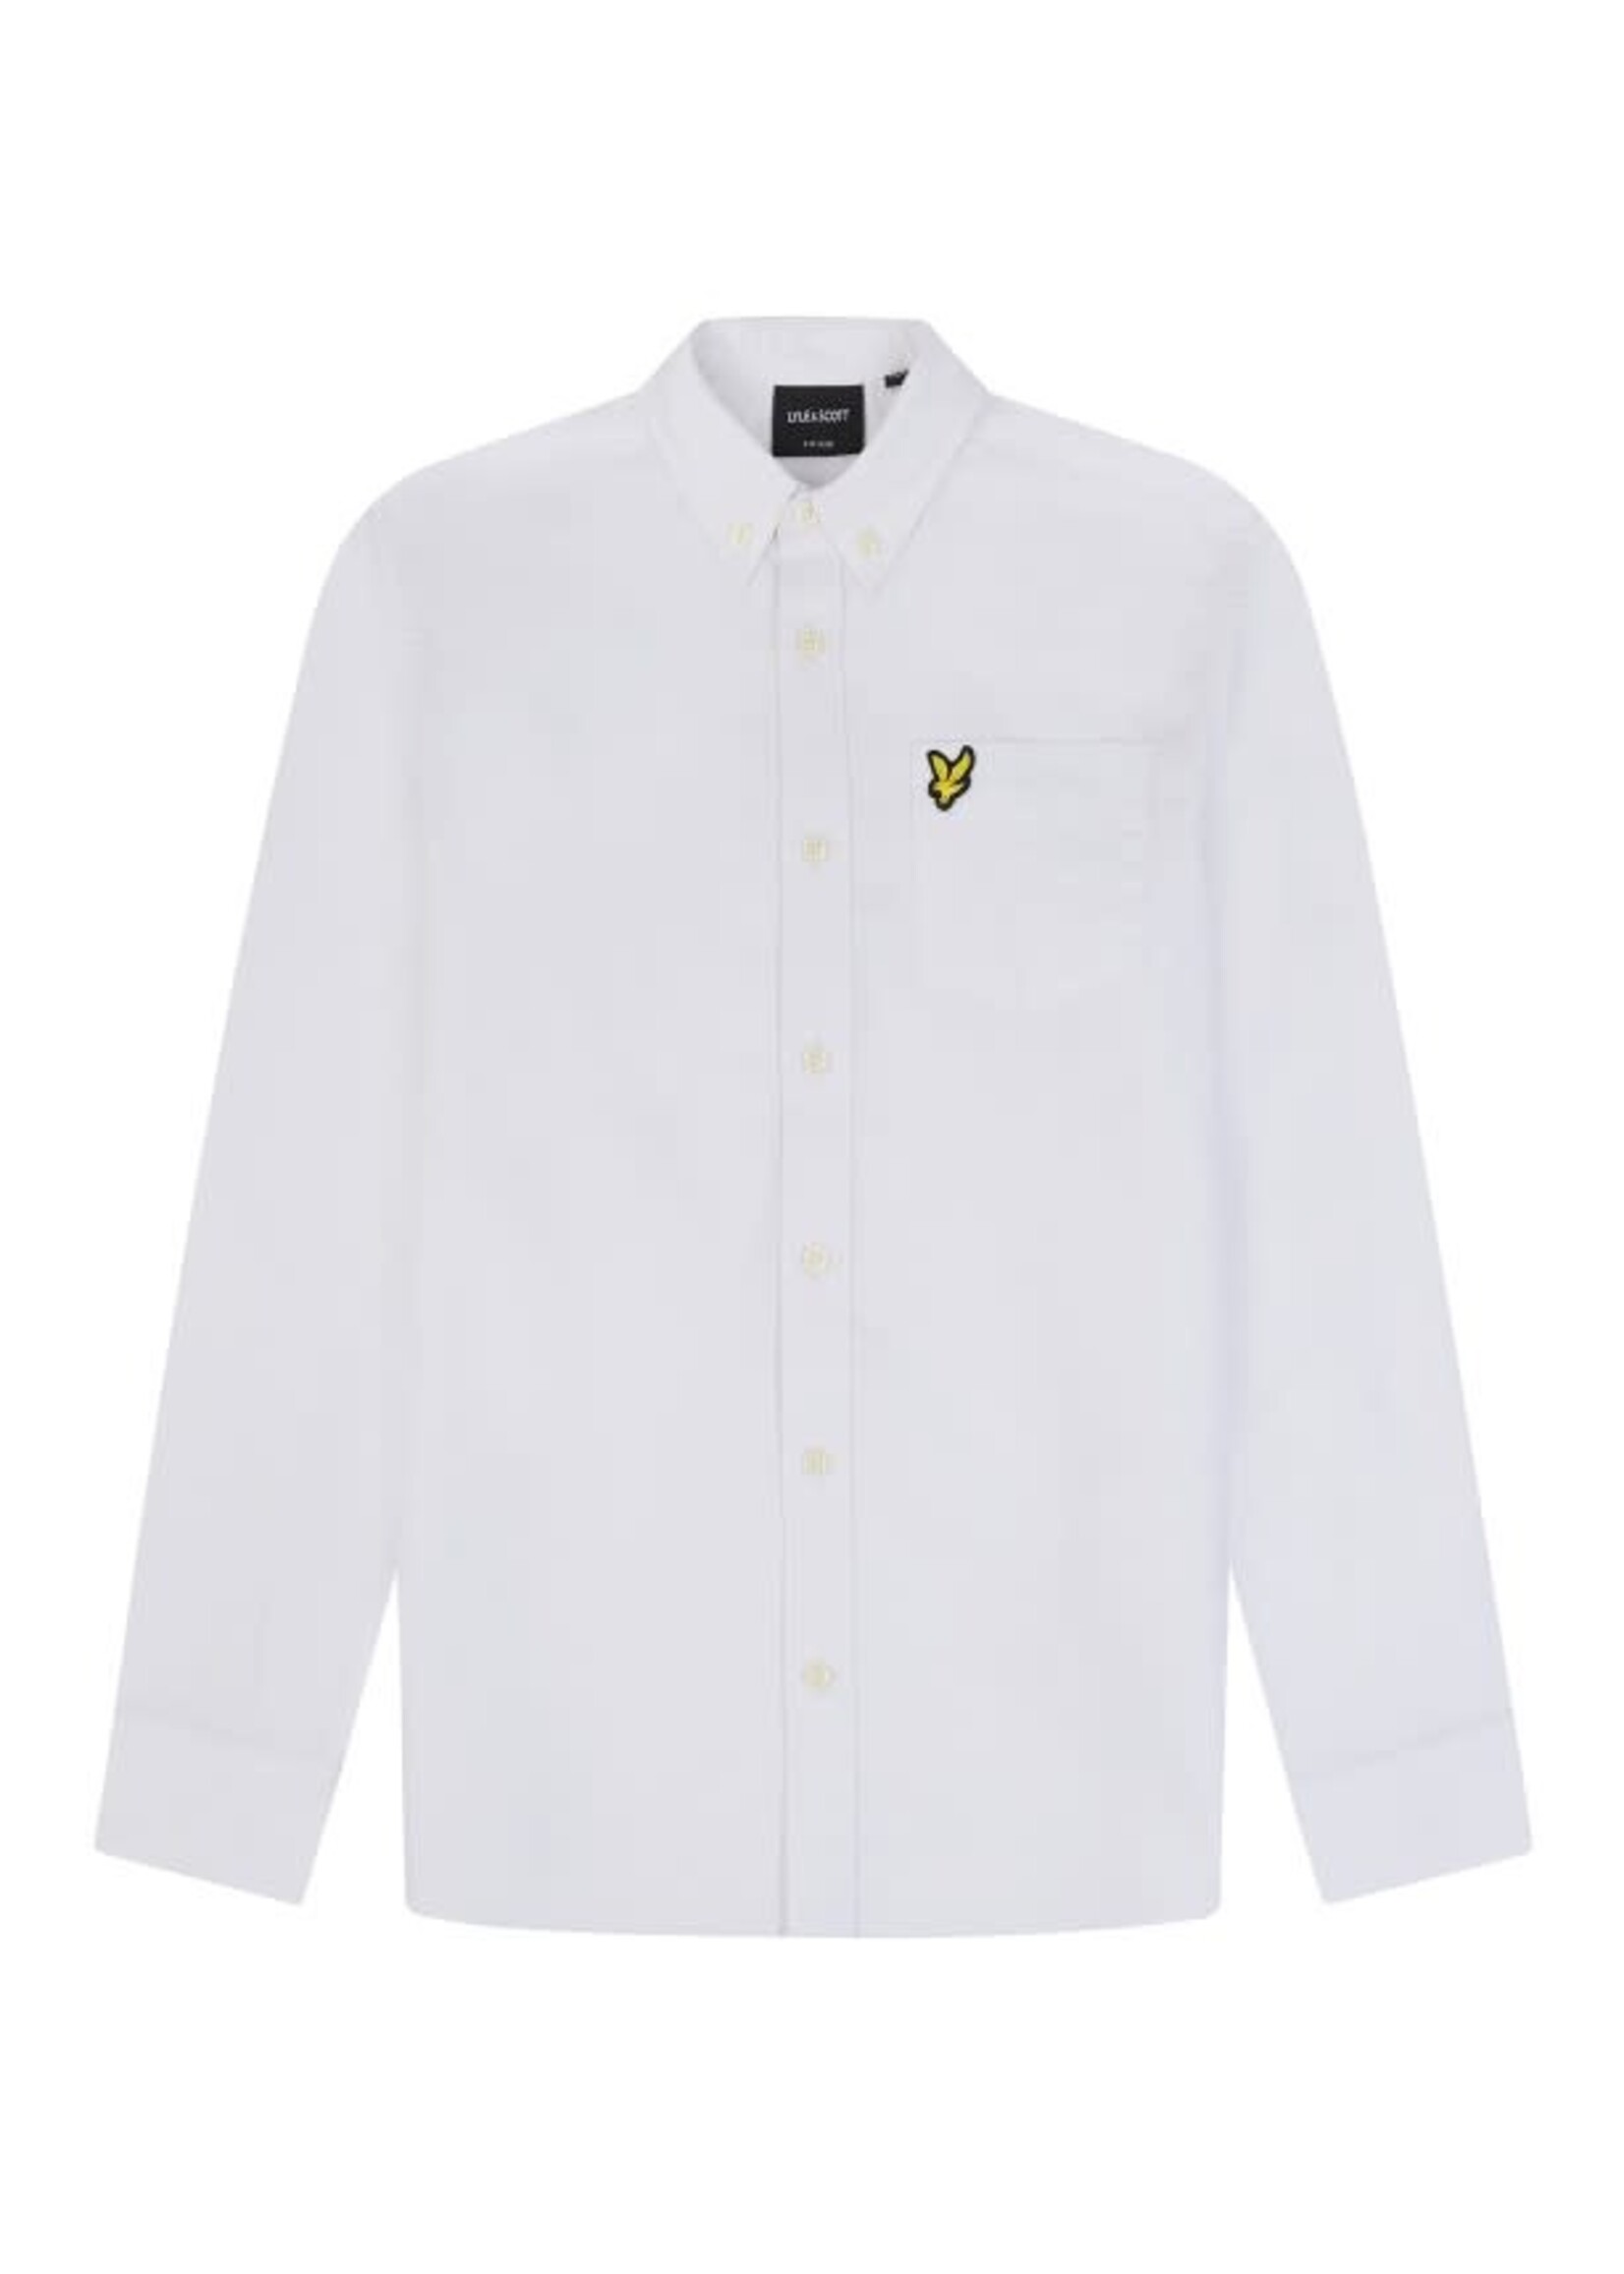 Lyle&Scott Lyle&Scott Oxford Shirt 626 White - LWB2000V